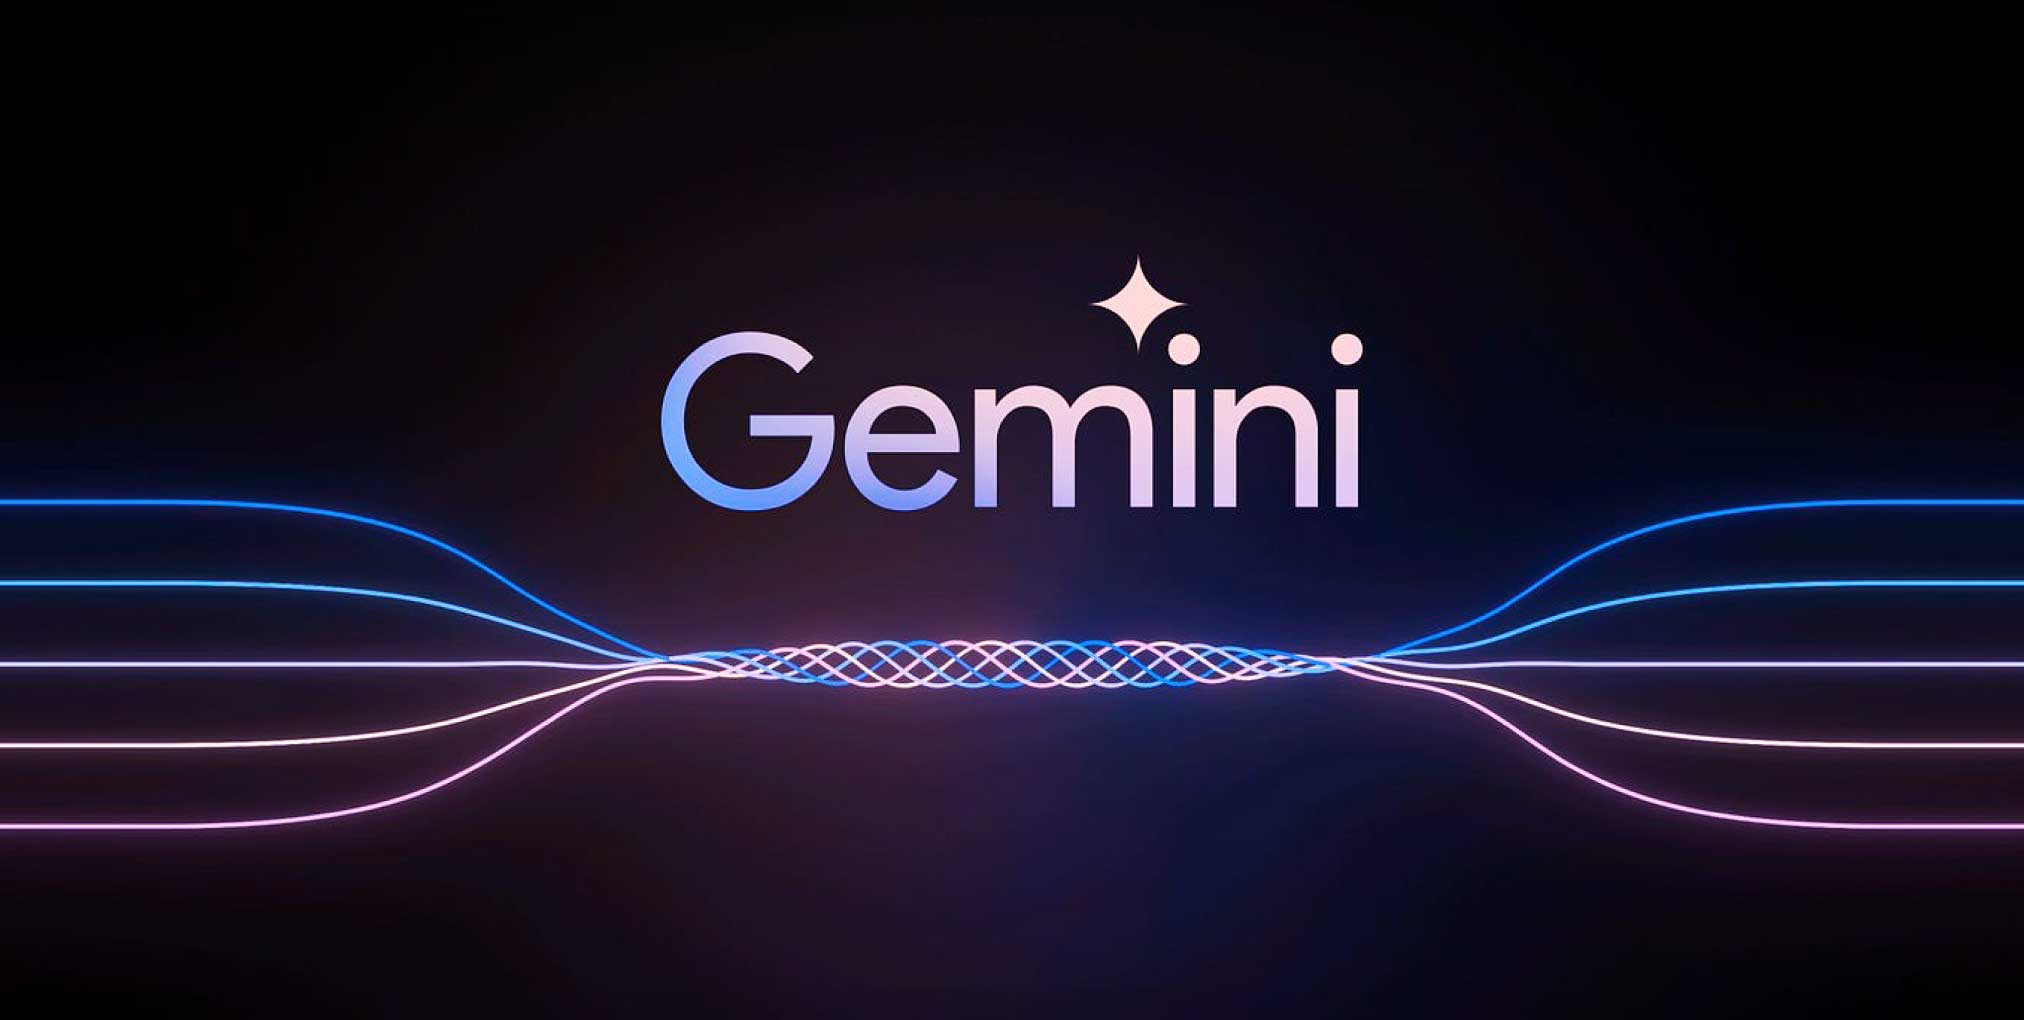 Next-Generation Capabilities of Google Gemini